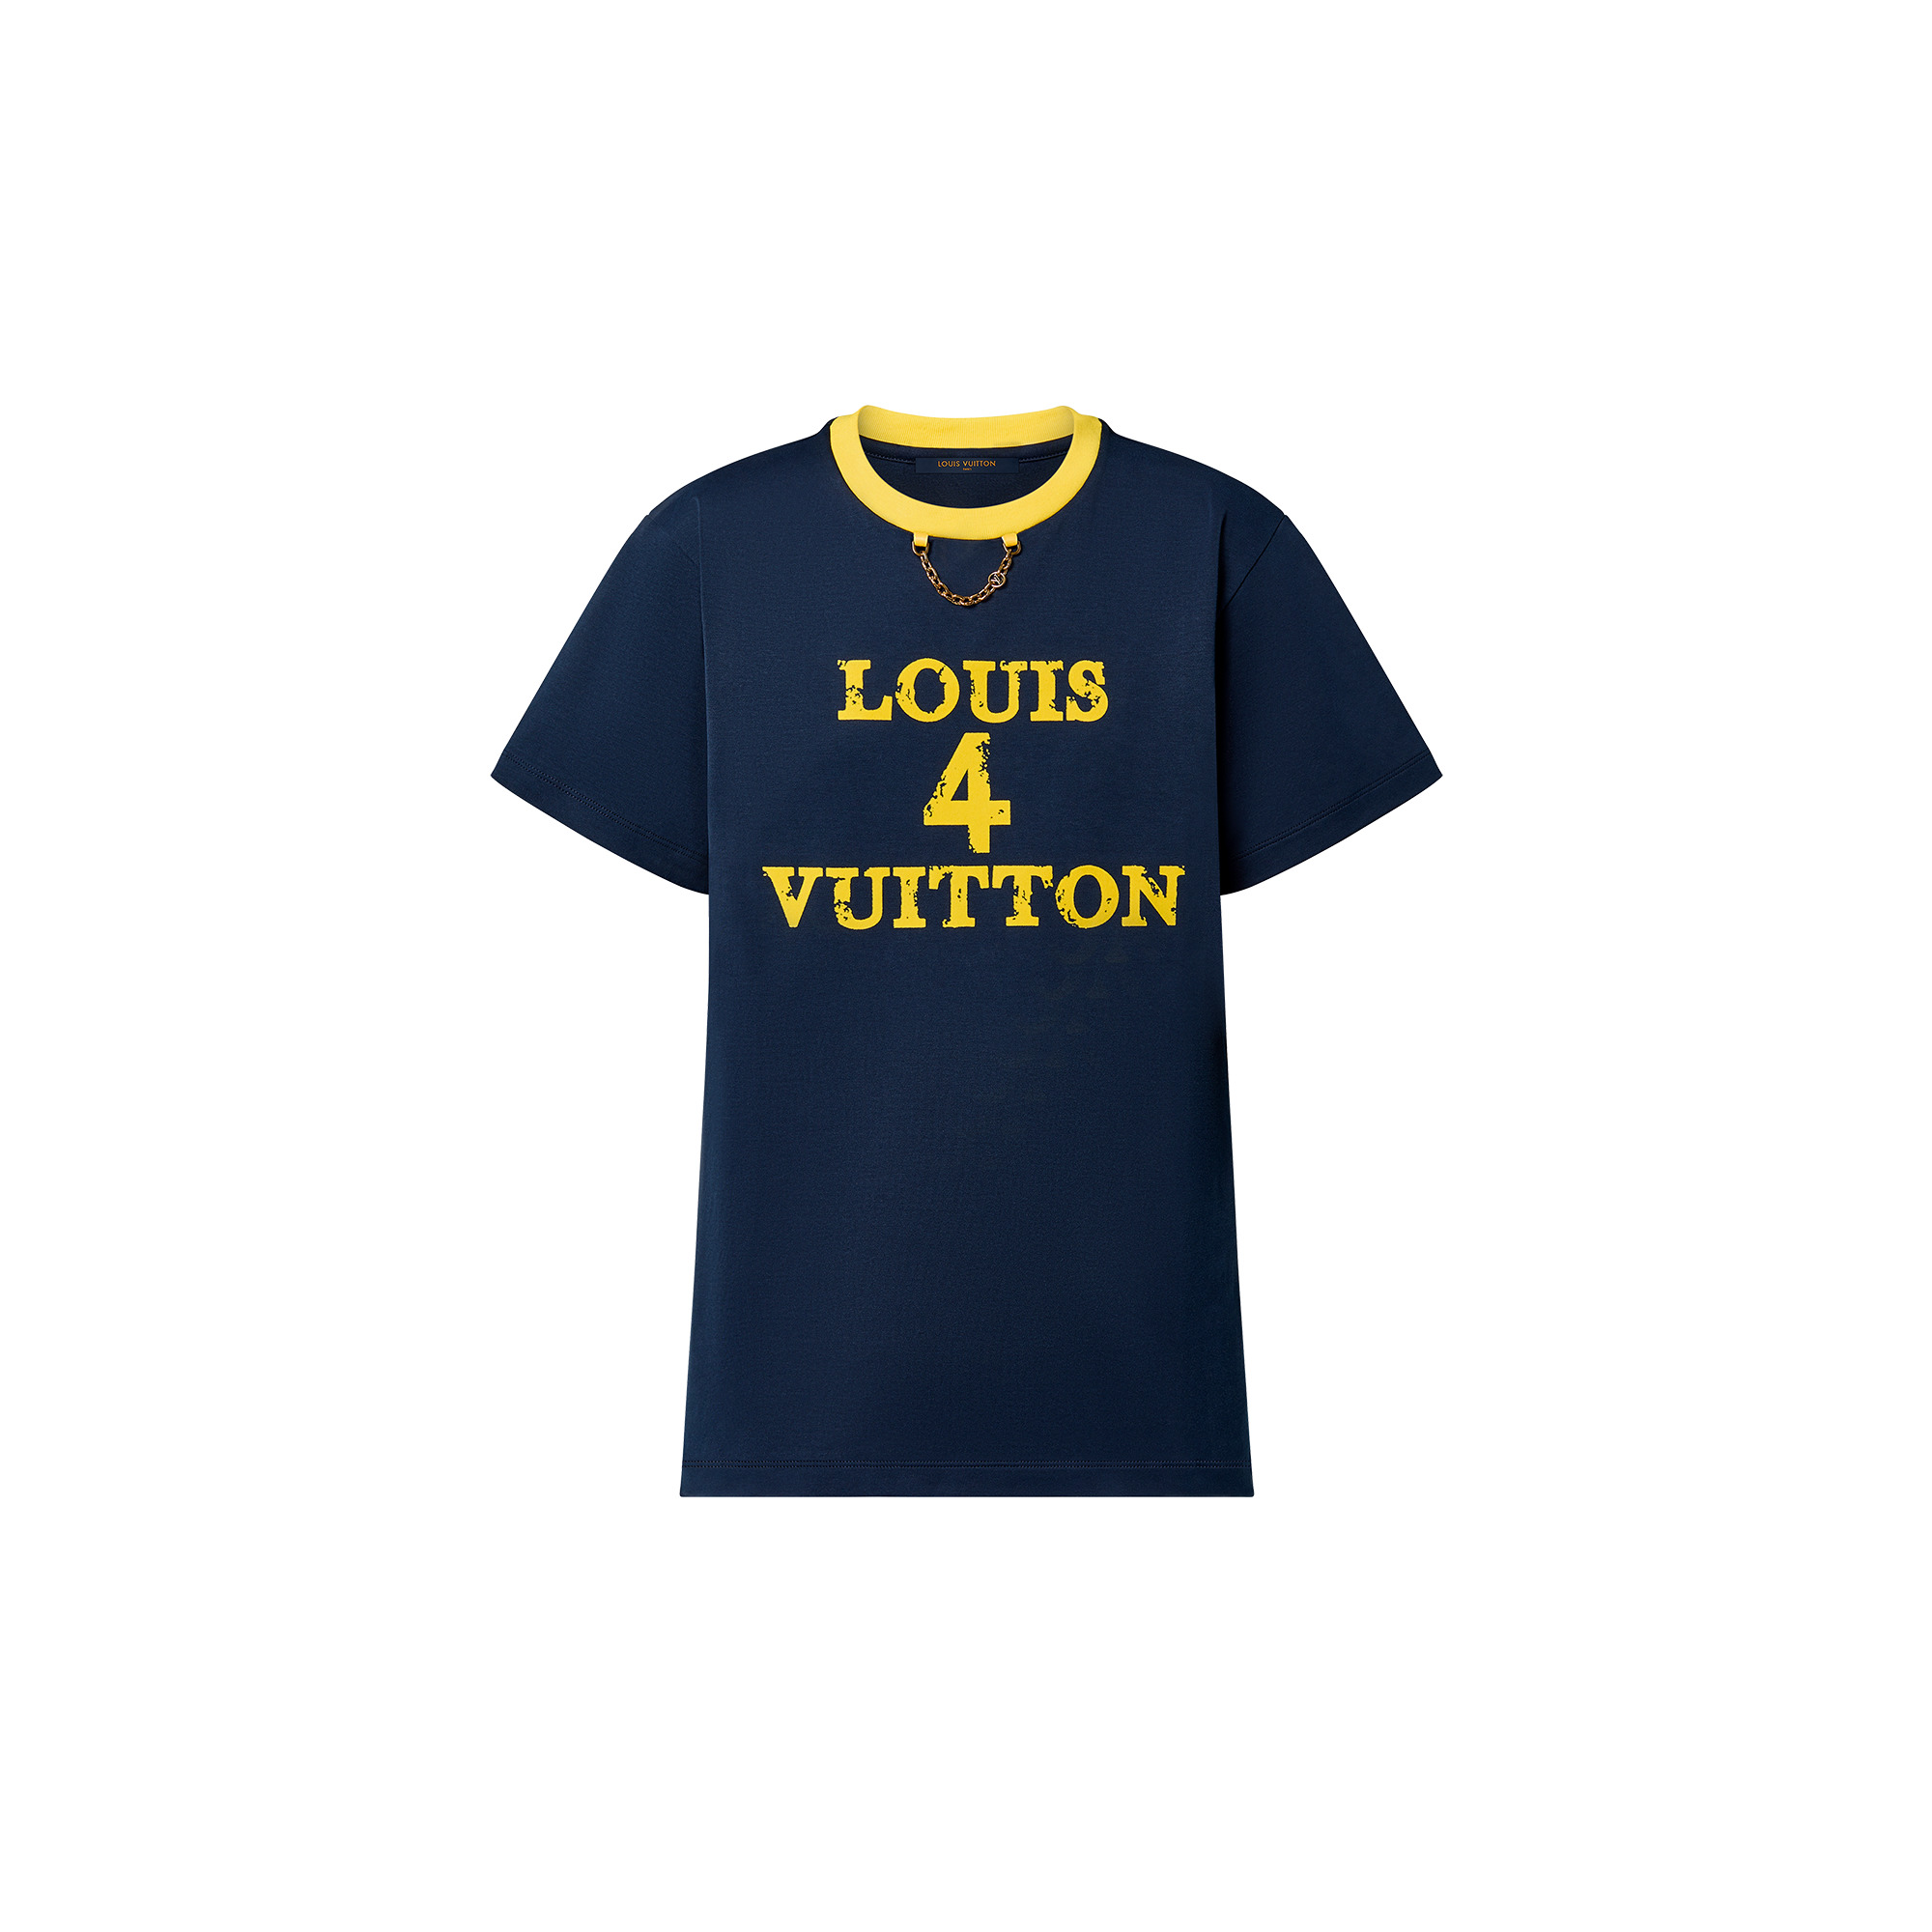 Louis 4 Vuitton T-Shirt - 1